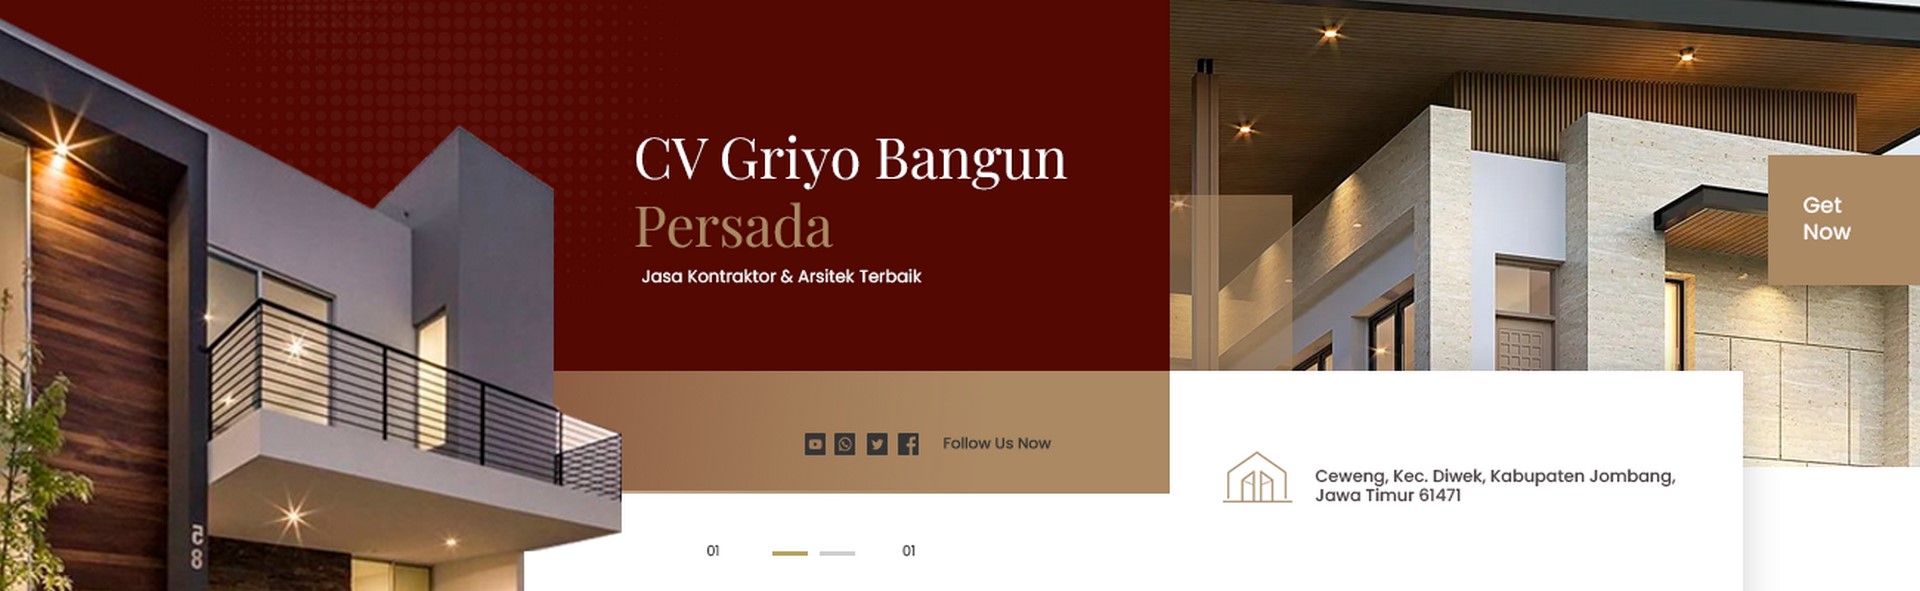 CV Griyo Bangun Persada - header